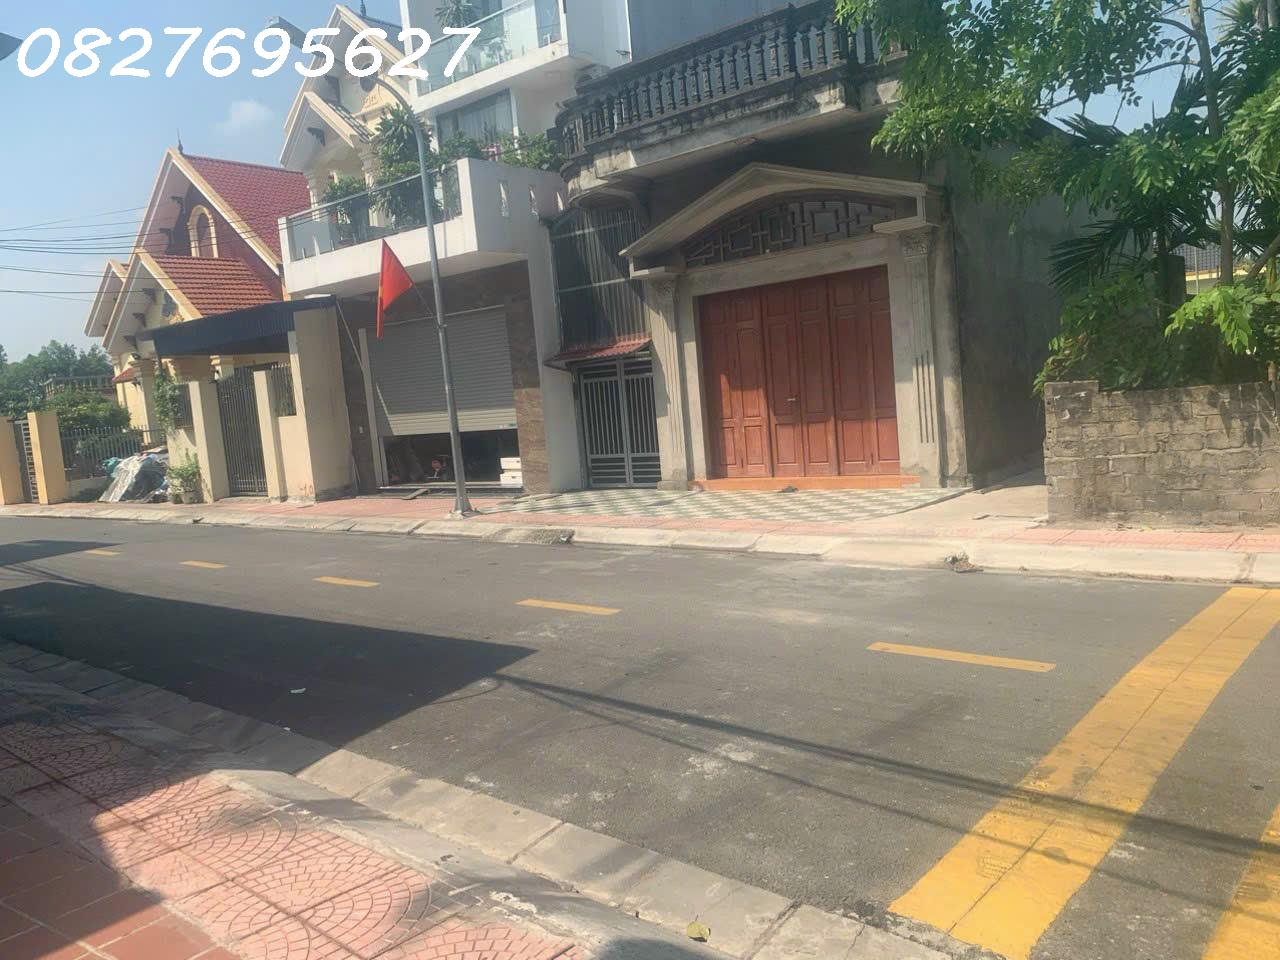 Chuyển nhượng nhà mặt đường tại thôn Kiều Đông, Hồng Thái, An Dương - Caophat 2